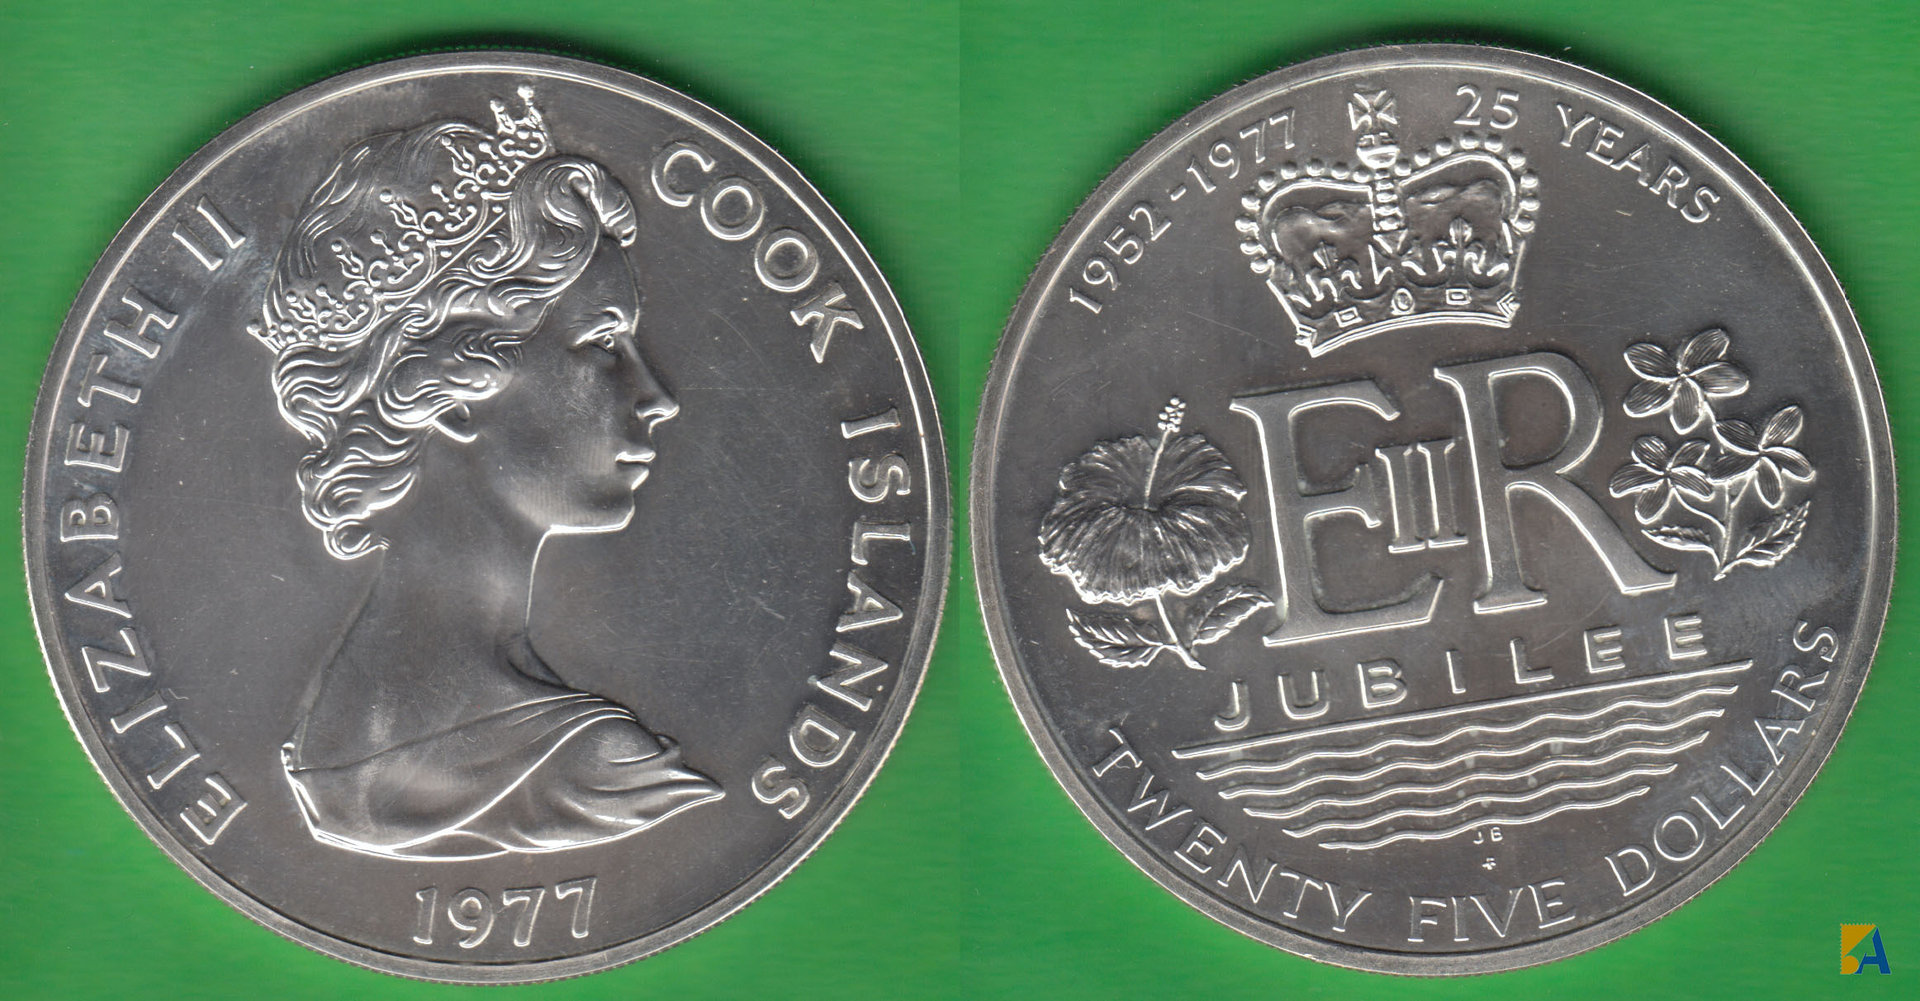 ISLAS COOK - COOK ISLANDS. 25 DOLARES (DOLLARS) DE 1977. PLATA 0.500.